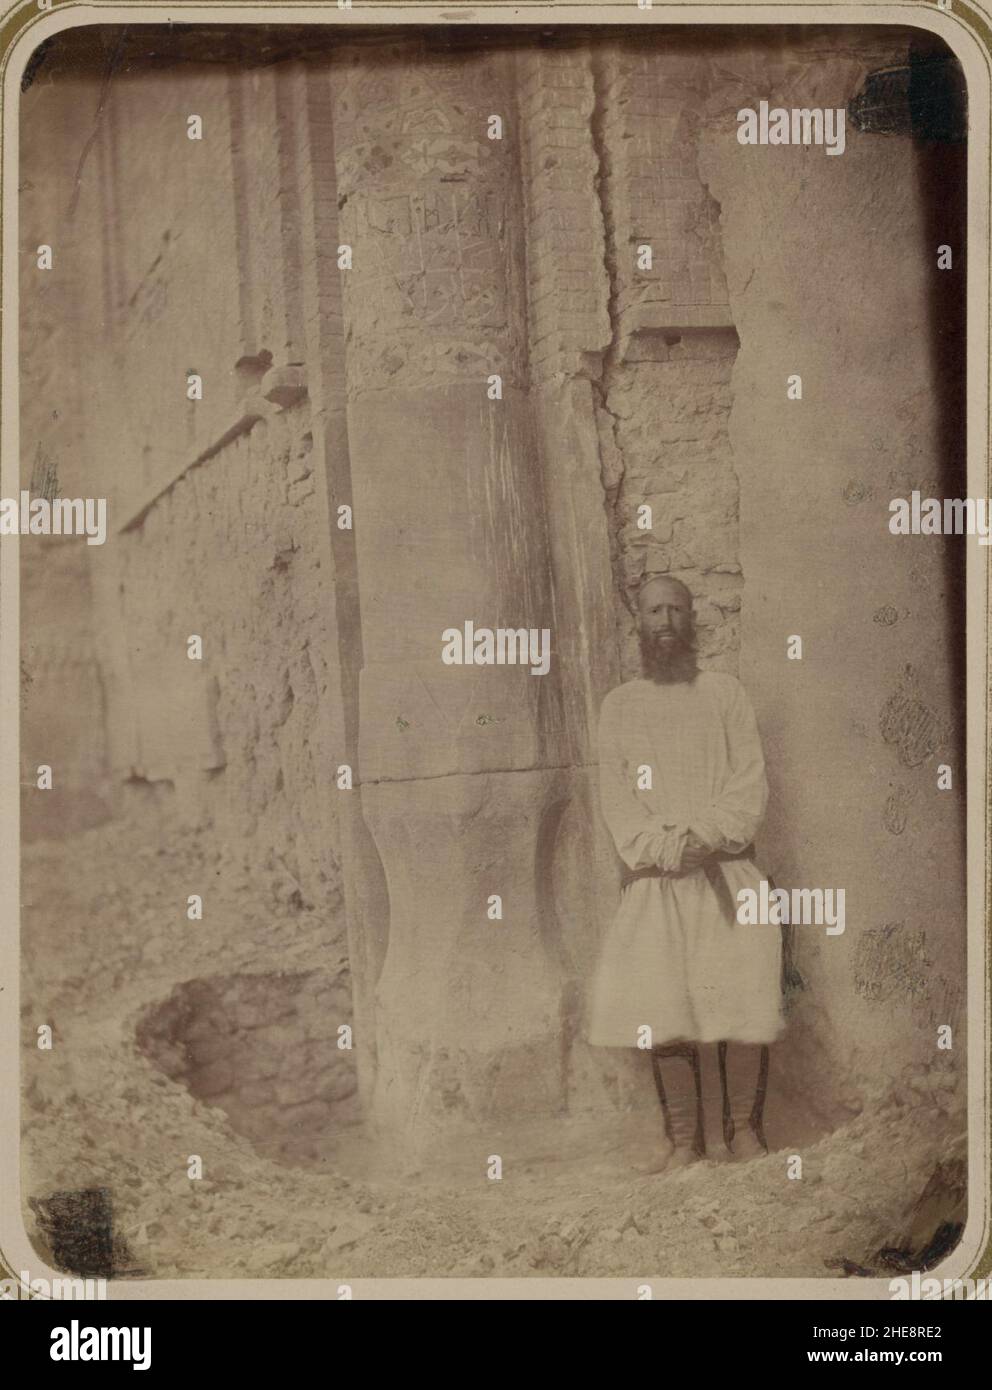 Samarkandskiia drevnosti. Medrese Bibi-Khanym sobornaia mechet'. Baza kolony (sic) Stock Photo